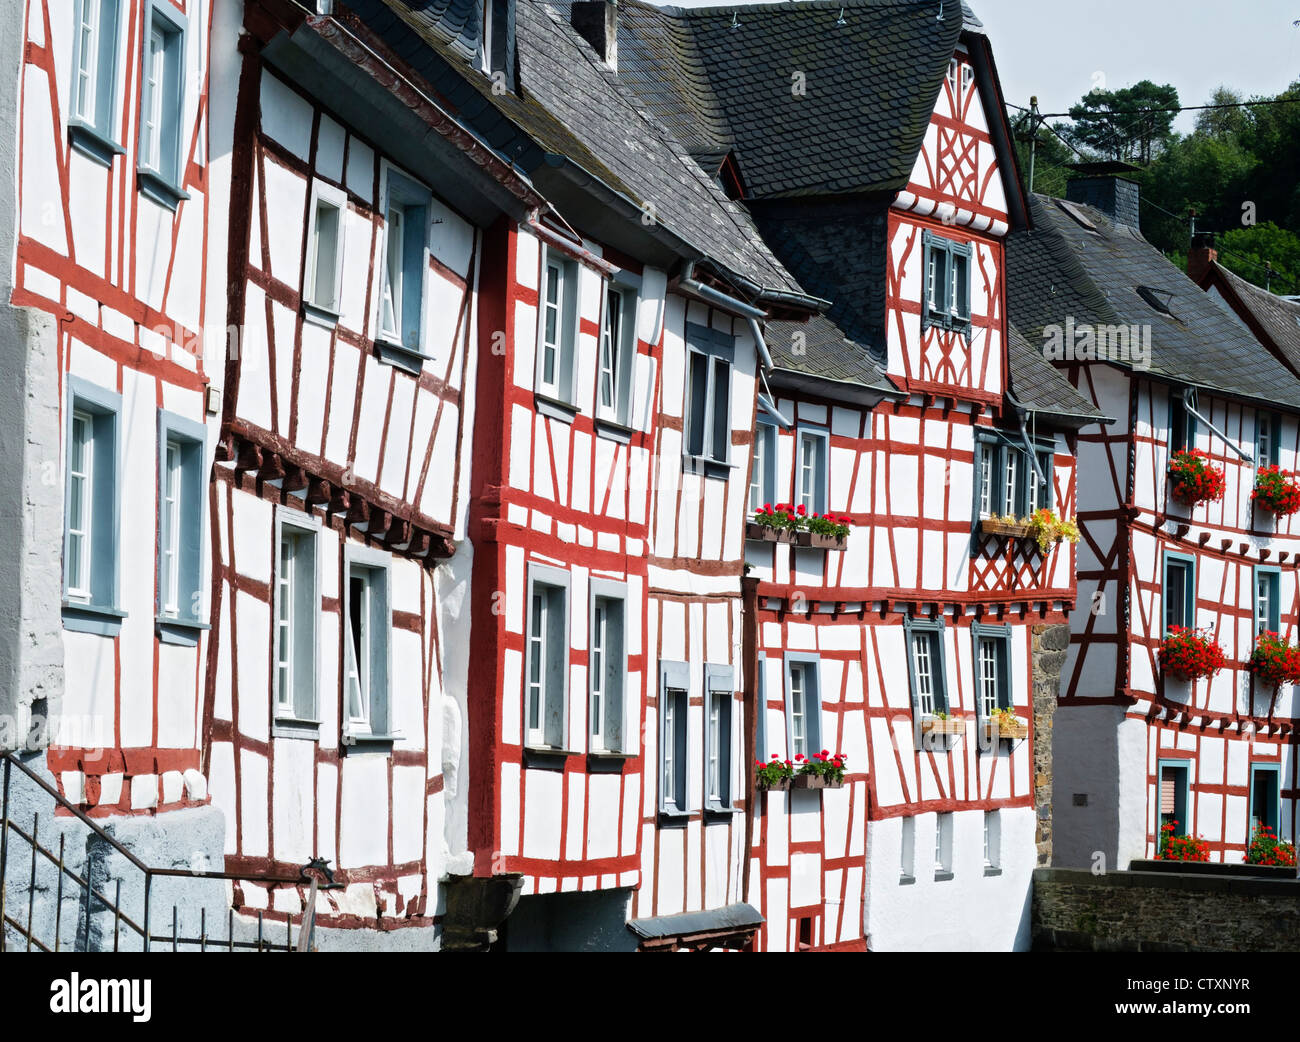 Vecchio semi-case con travi di legno nel villaggio storico di Monreal nella regione Eifel della Renania Palatinato Germania Foto Stock